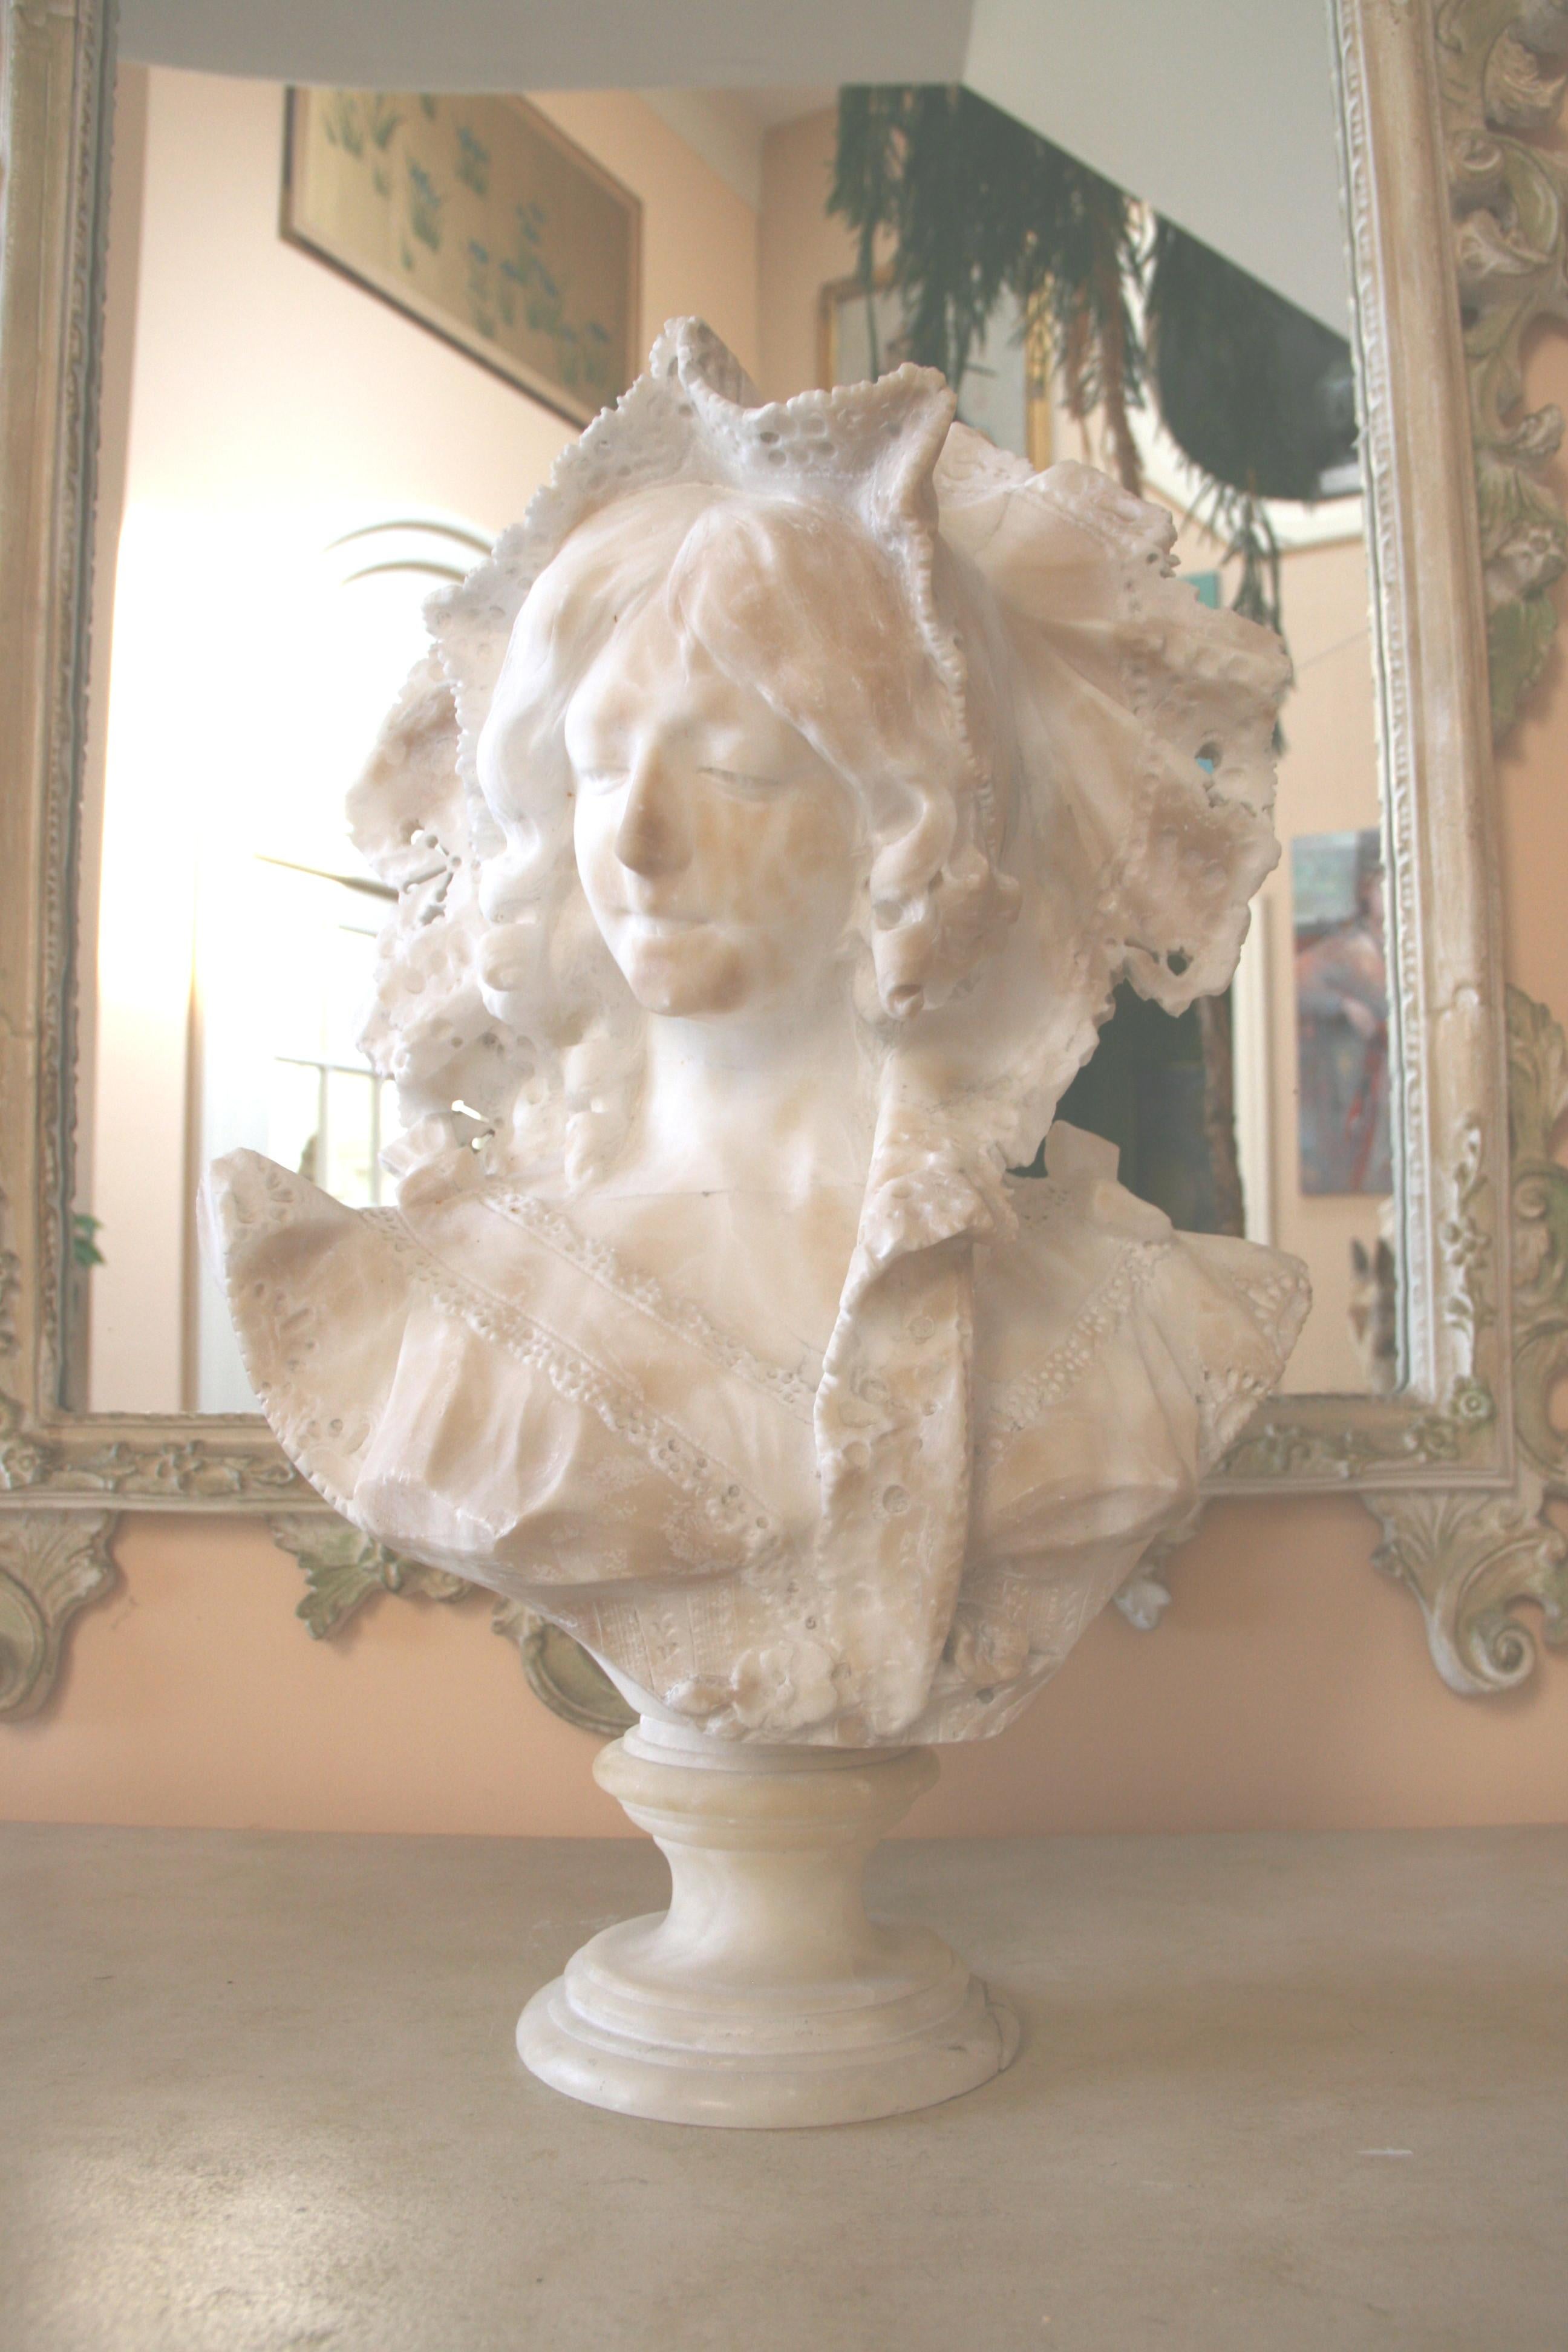 Marbre blanc Art Nouveau courbé à la main  buste d'une jeune femme. Son chapeau élaboré encadre un beau visage. Style vestimentaire de la période Art nouveau de la fin du XIXe siècle. Le buste repose sur un socle rond en marbre.
Les taches de brun